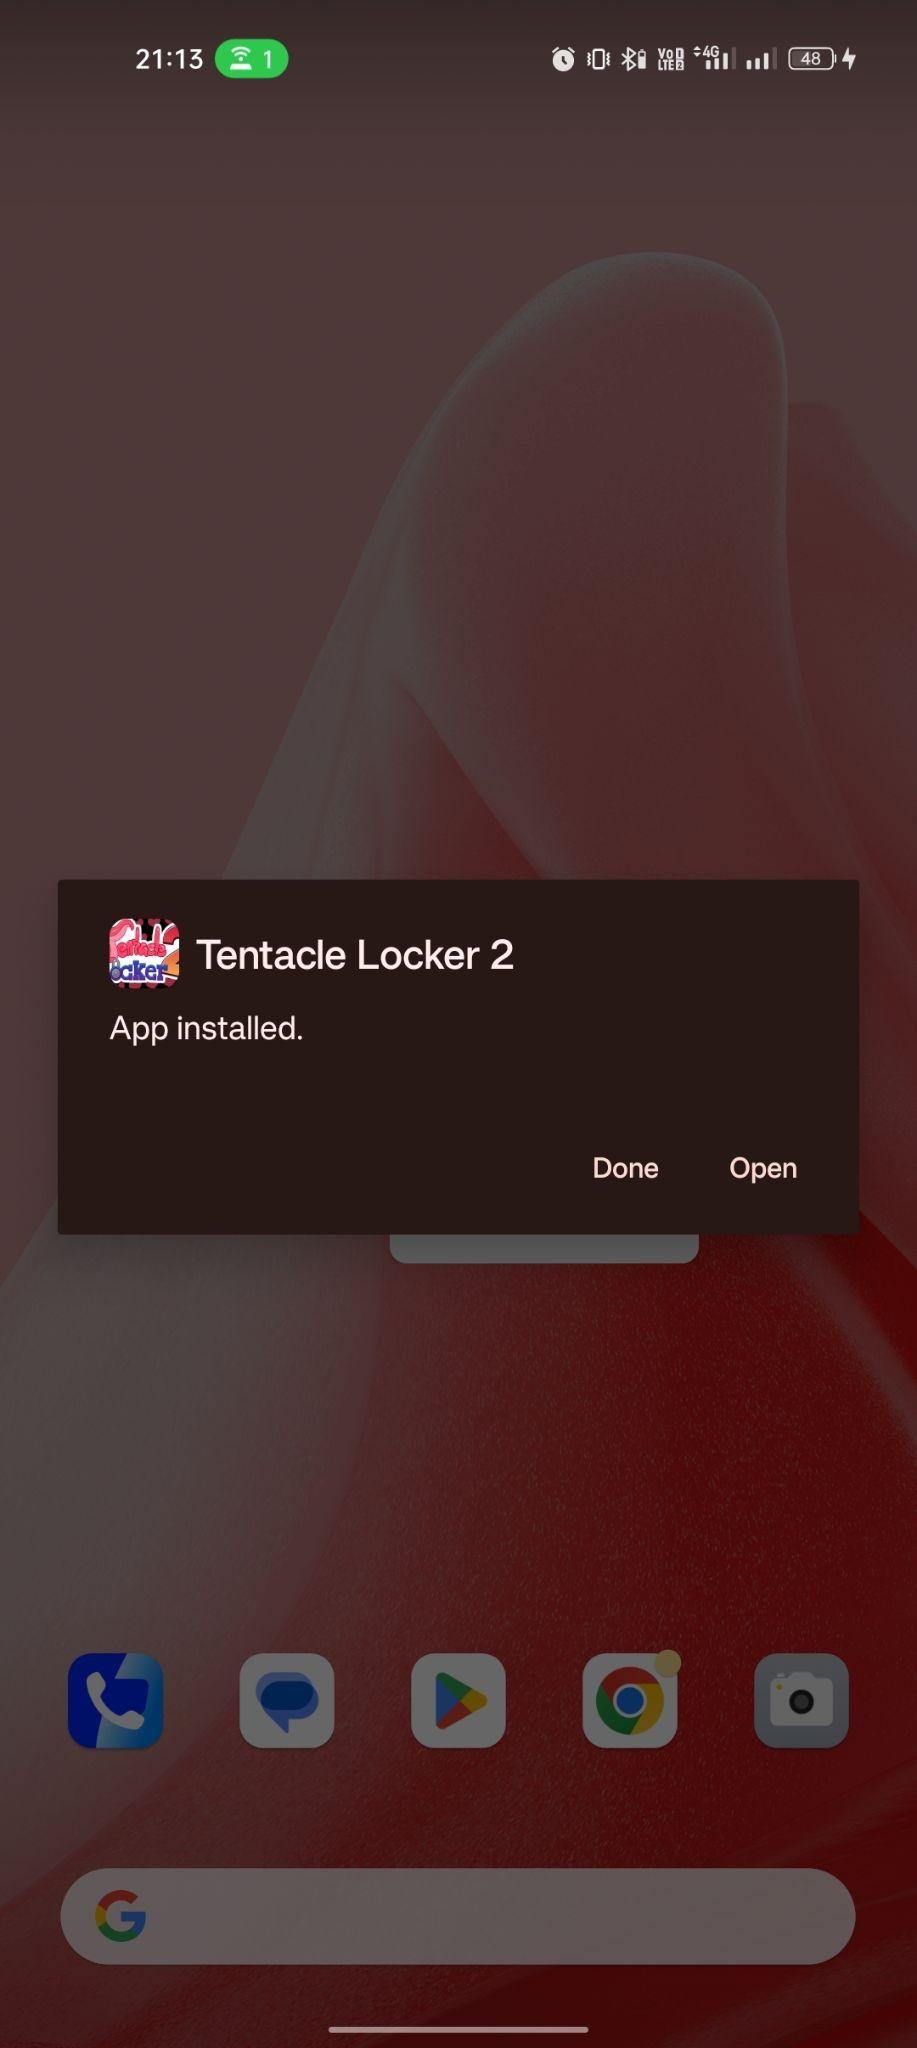 Tentacle Locker 2 apk installed